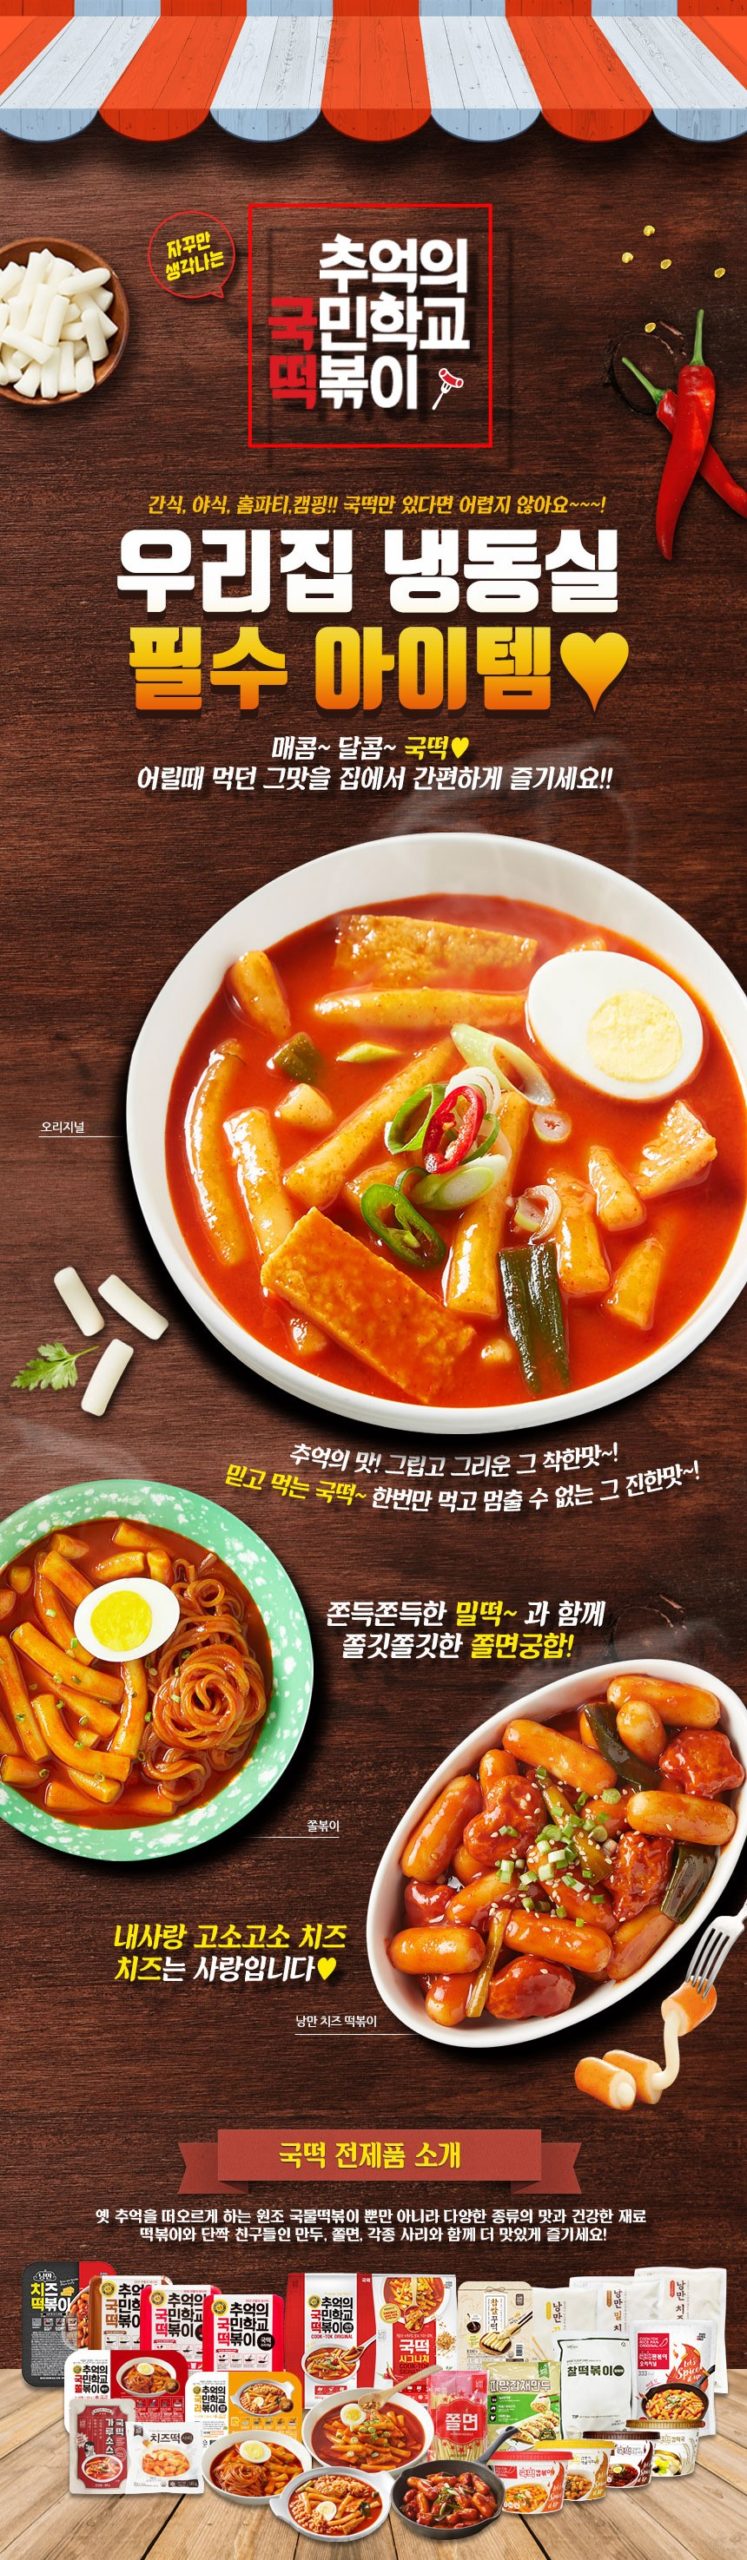 韓國食品-JS Kookmin School Wheat Flour Rice Cake (Long) 1kg